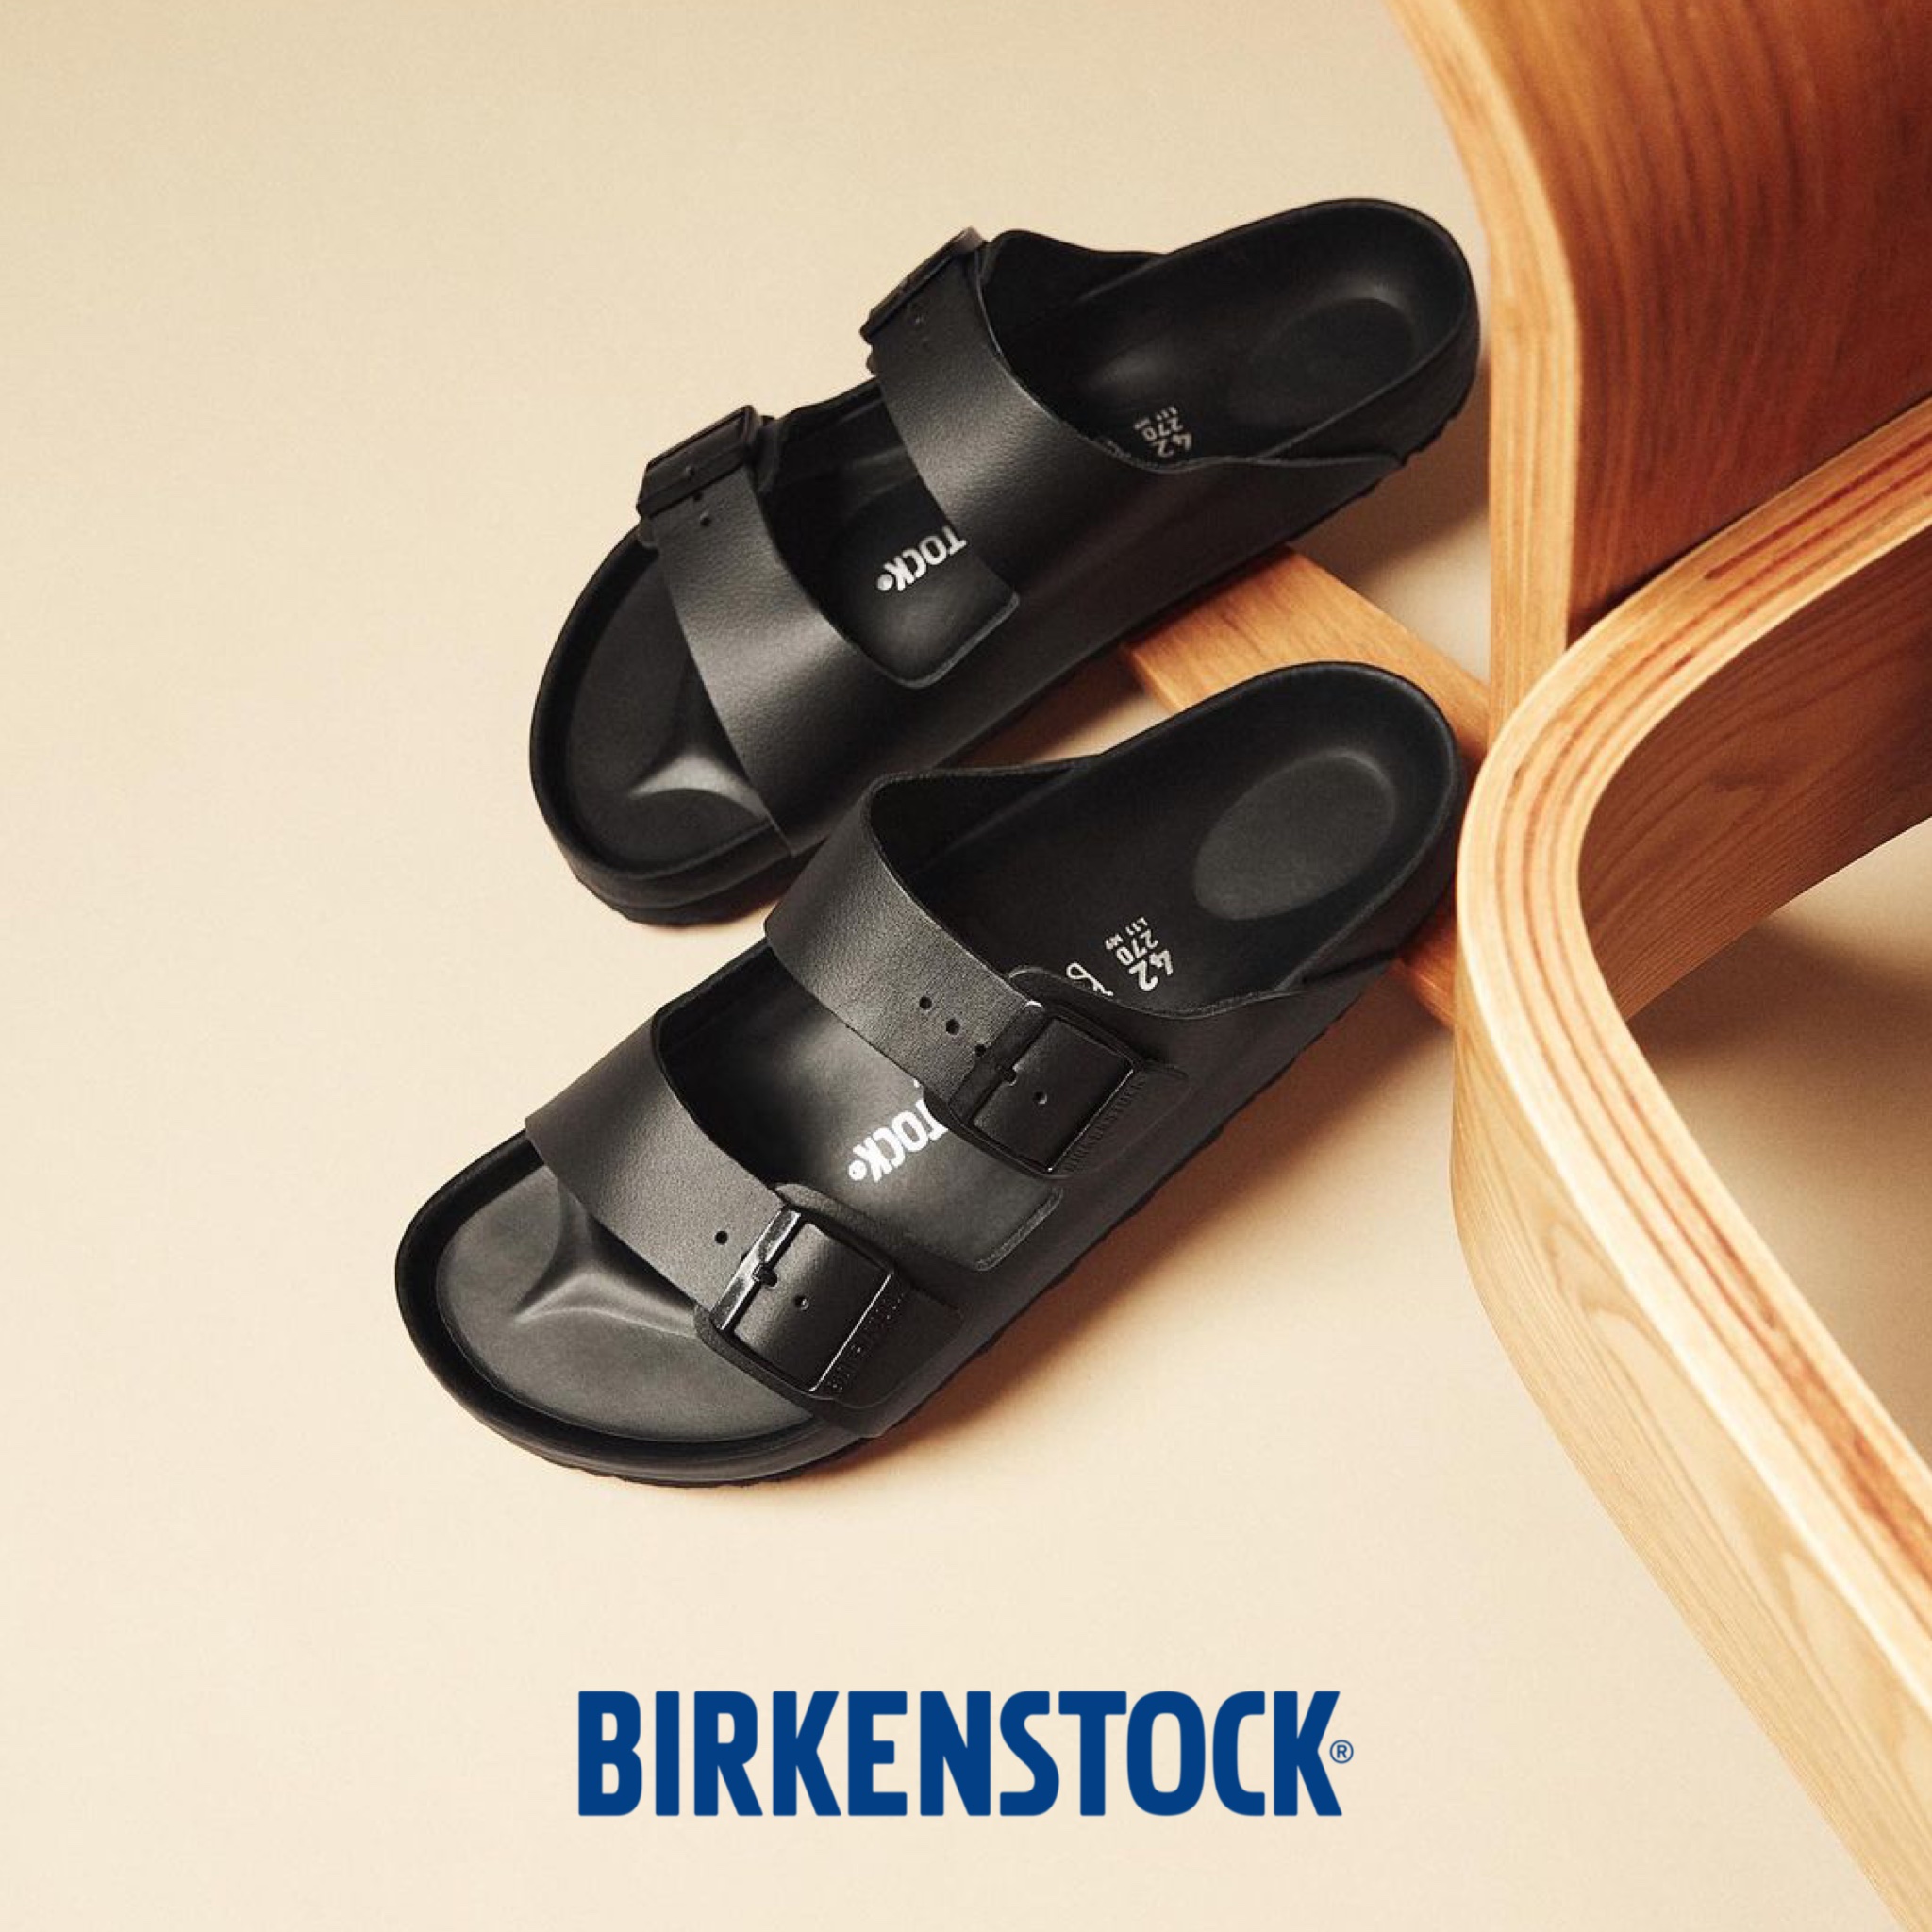 Birkenstock brand